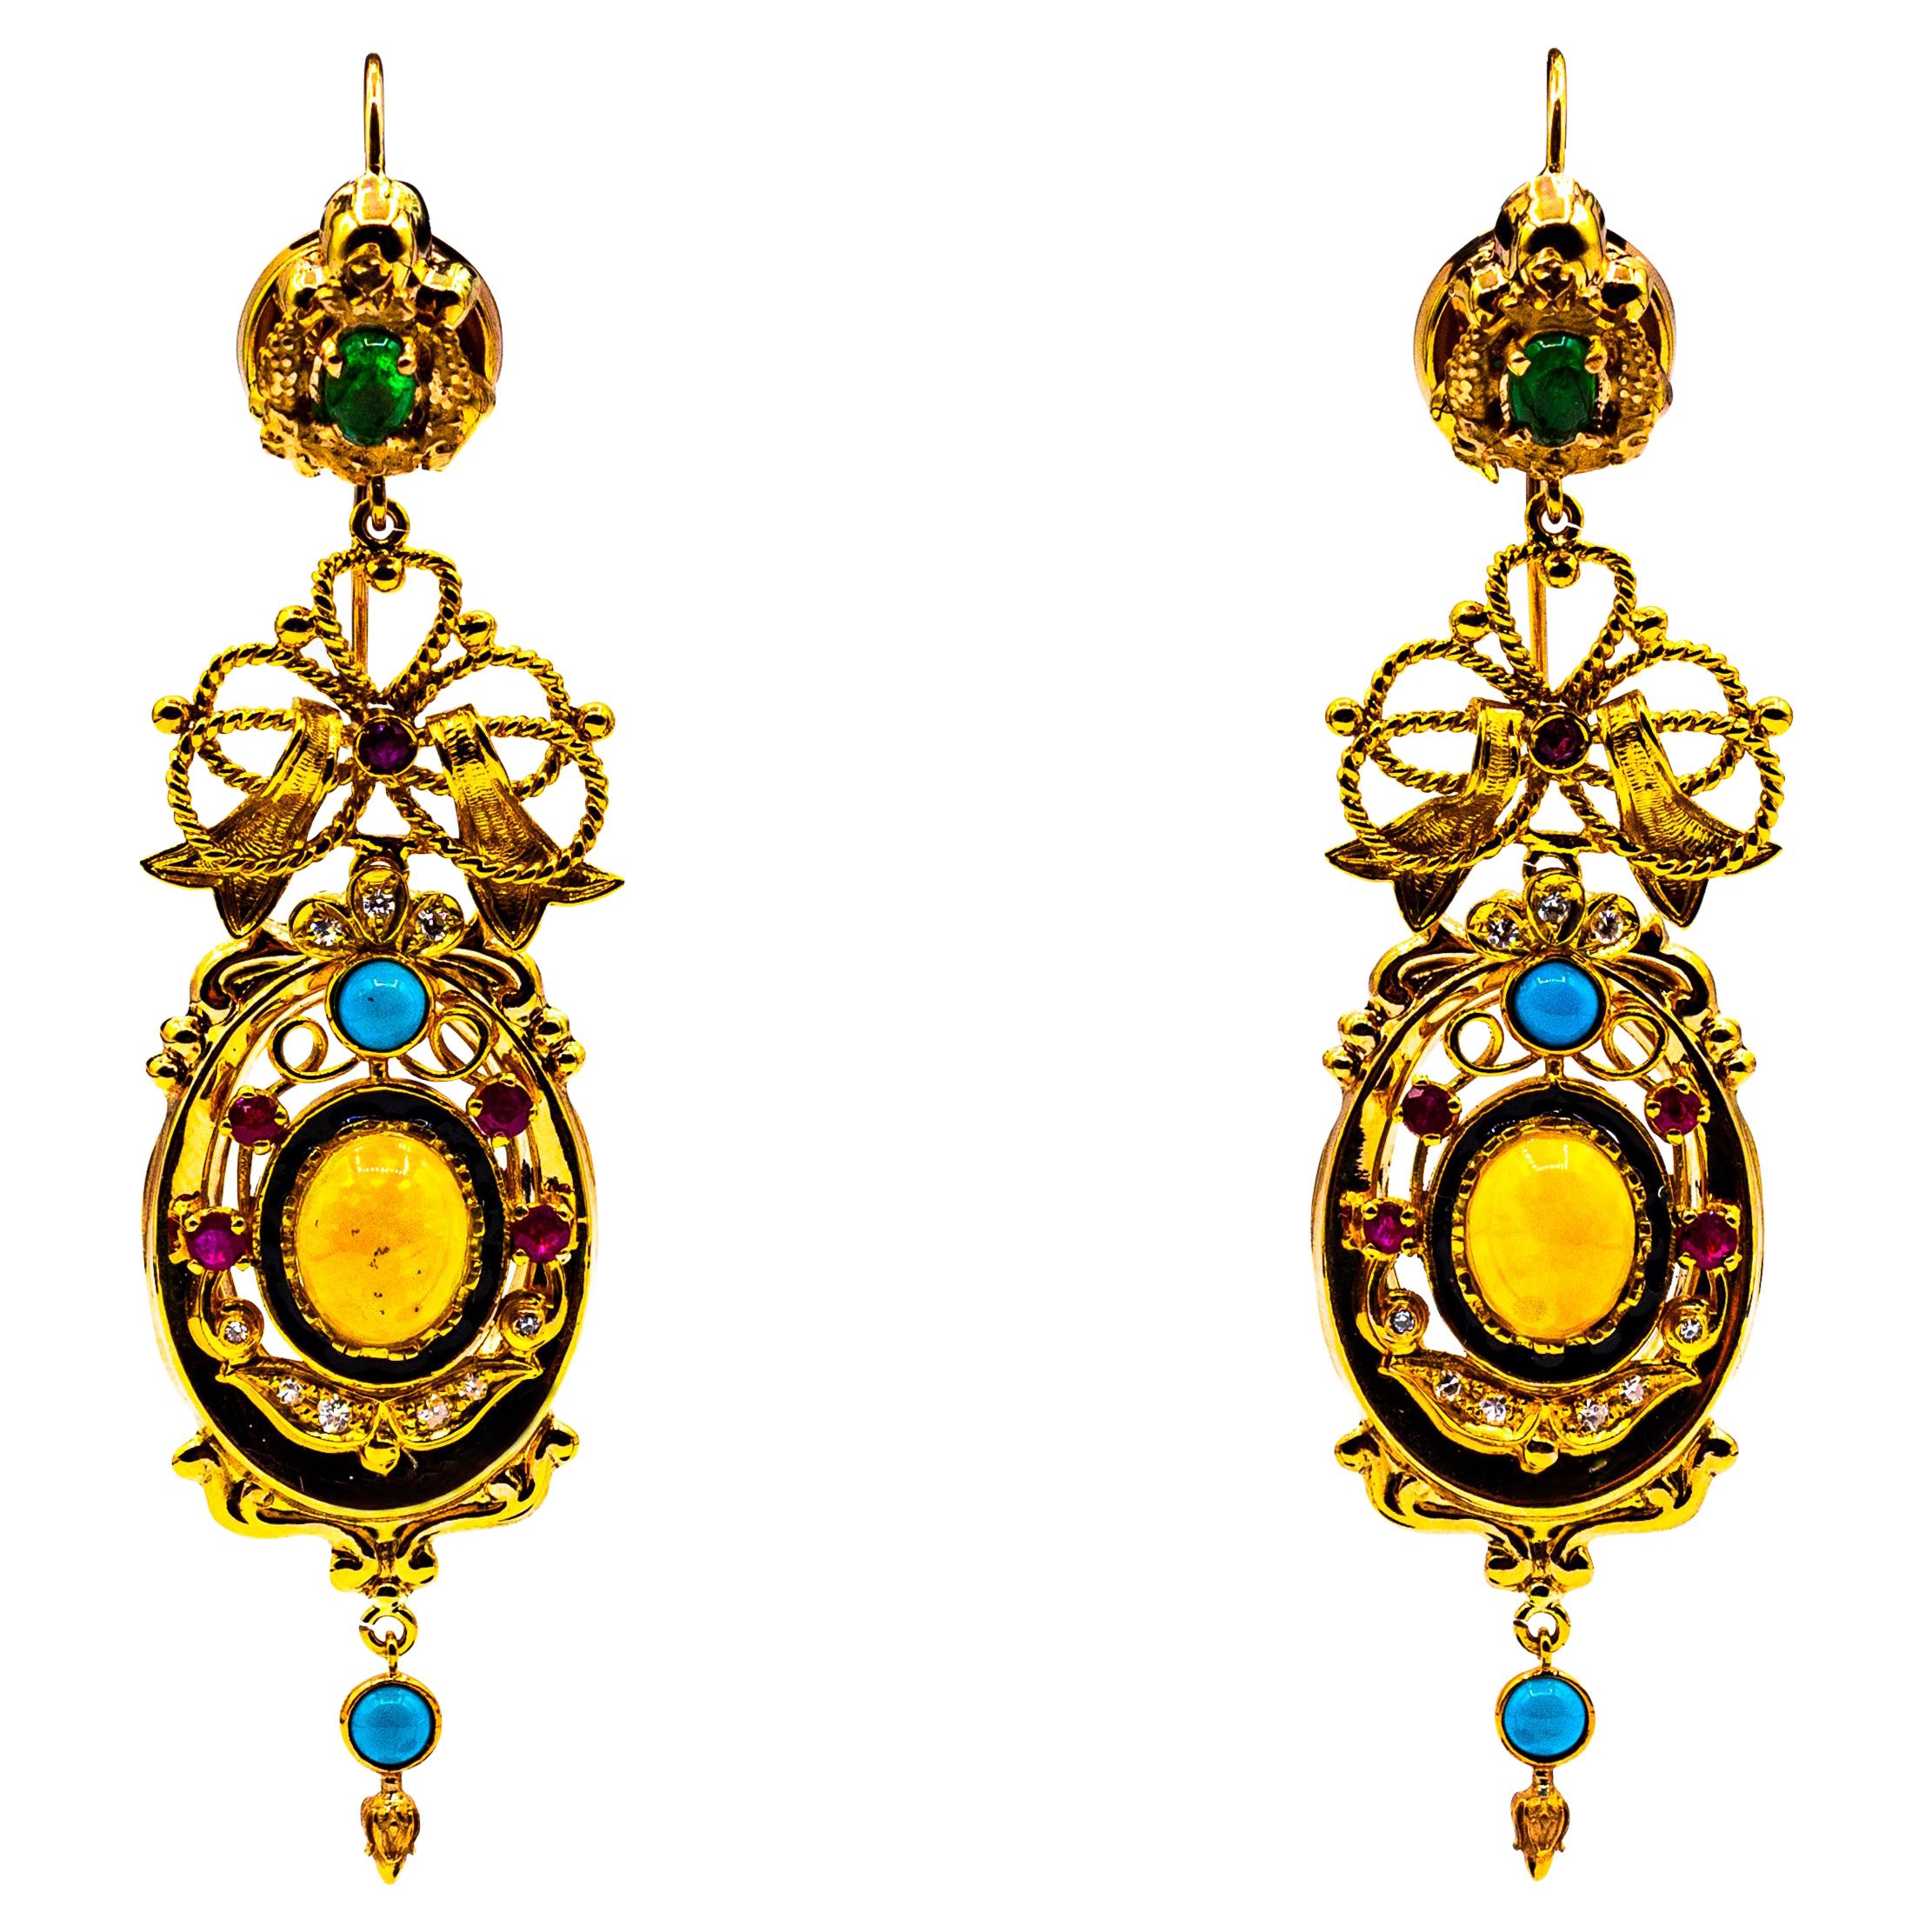 Boucles d'oreilles en or jaune de style Art déco avec diamants blancs, émeraudes, rubis, opales et turquoises